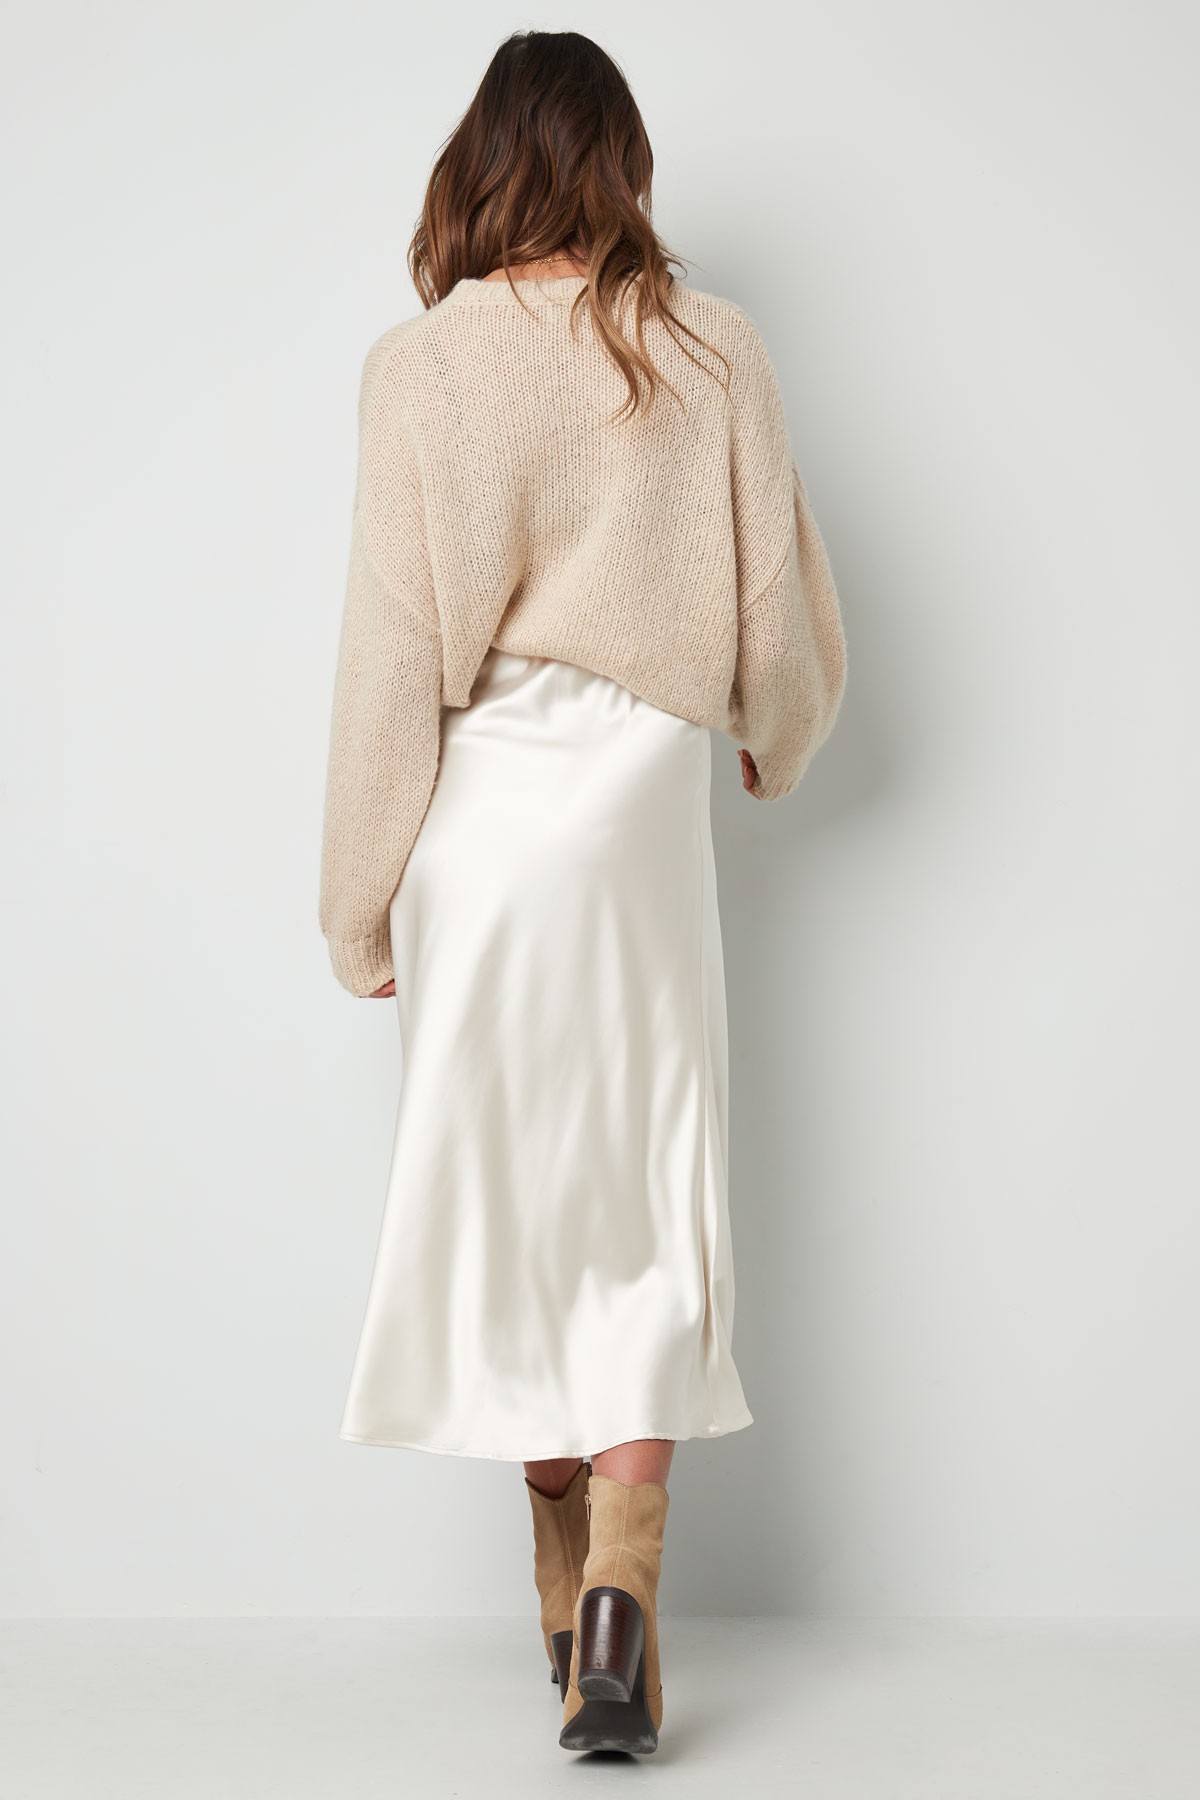 Midi skirt - white  h5 Picture8